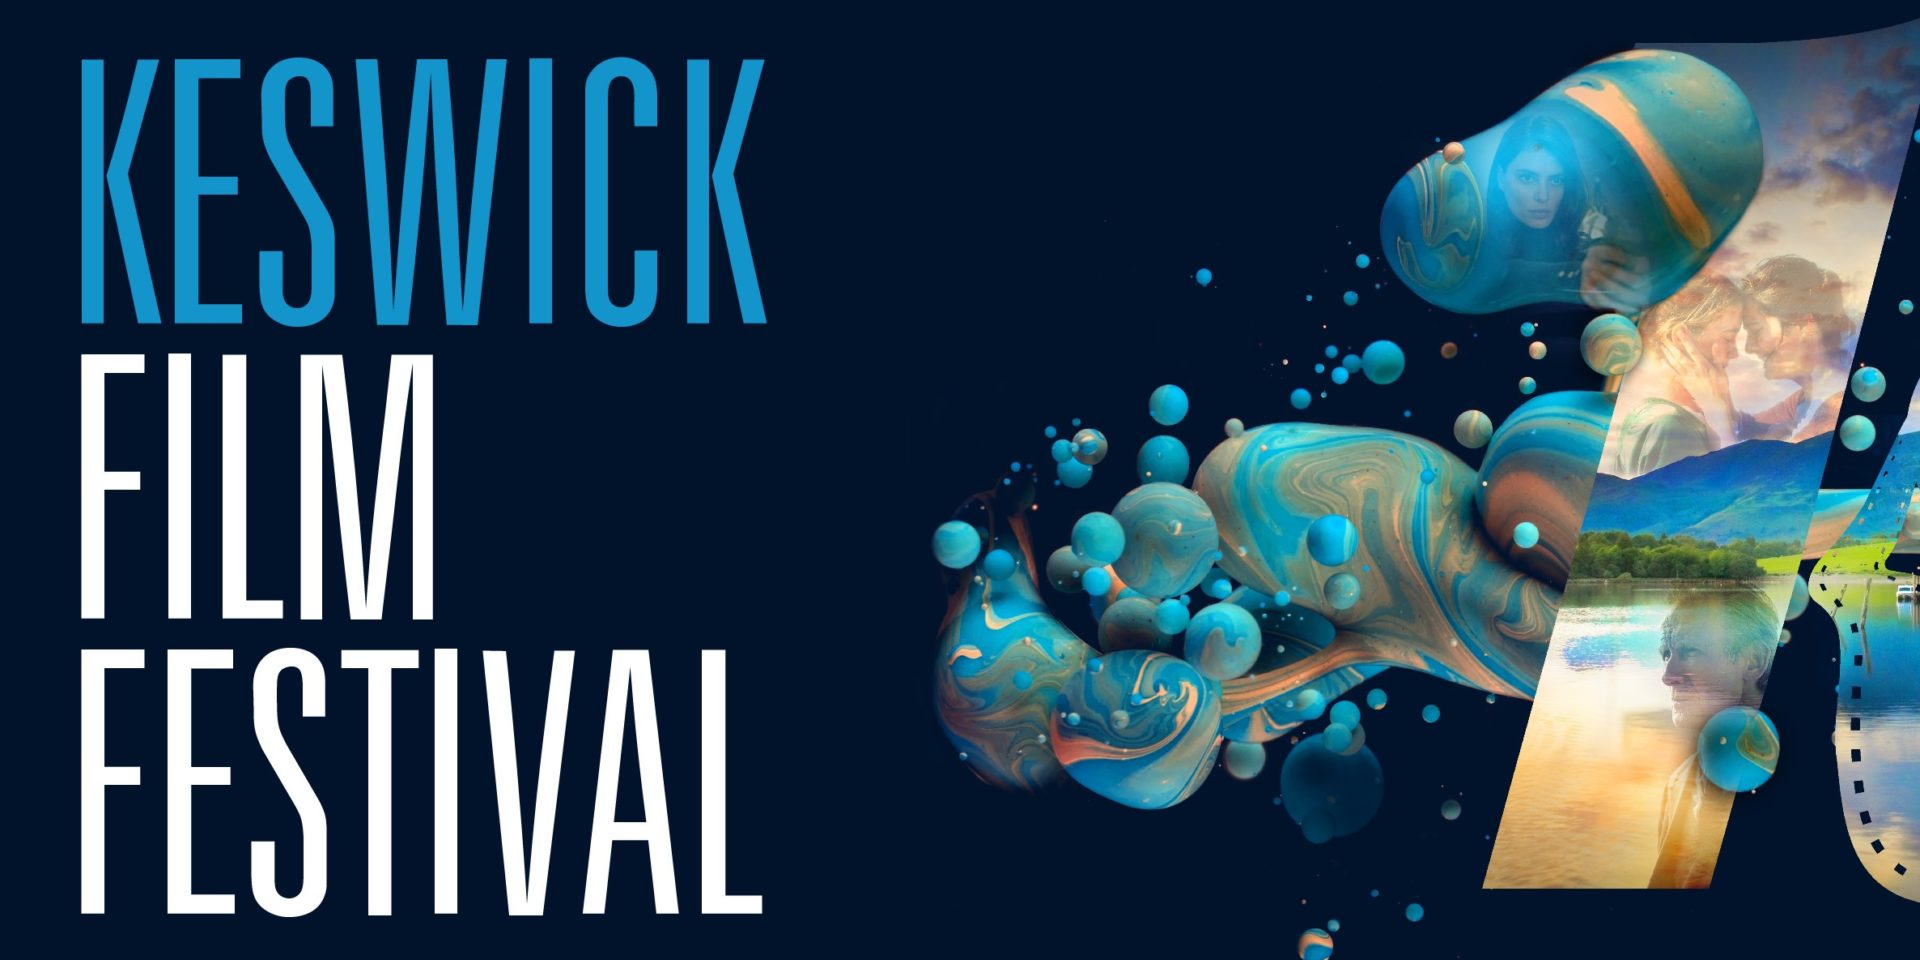 Keswick Film Festival